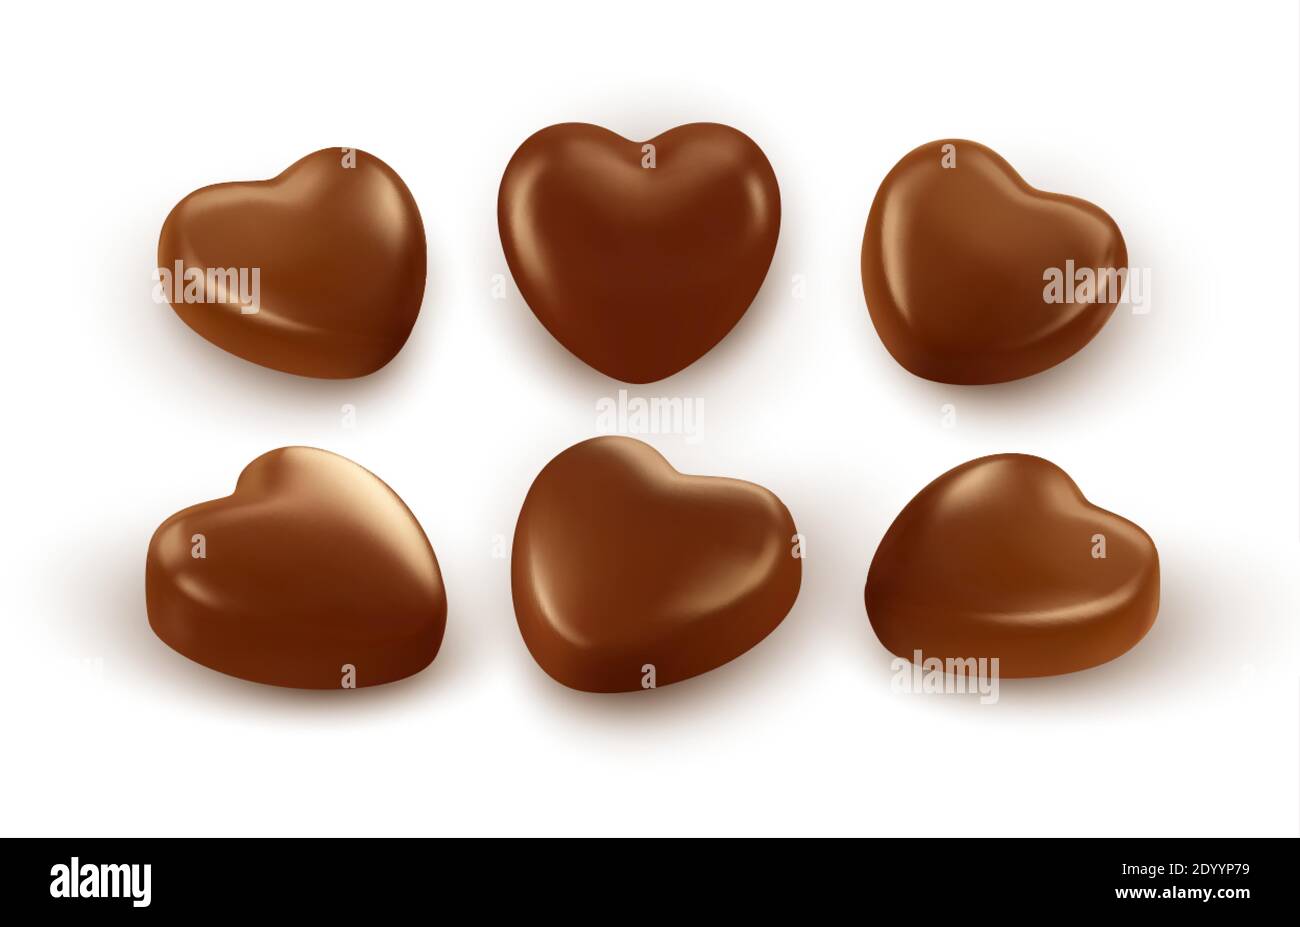 Ensemble de chocolats réalistes en forme de cœur, isolés sur fond blanc. Élément festif pour une Saint Valentin heureuse. Illustration vectorielle Illustration de Vecteur